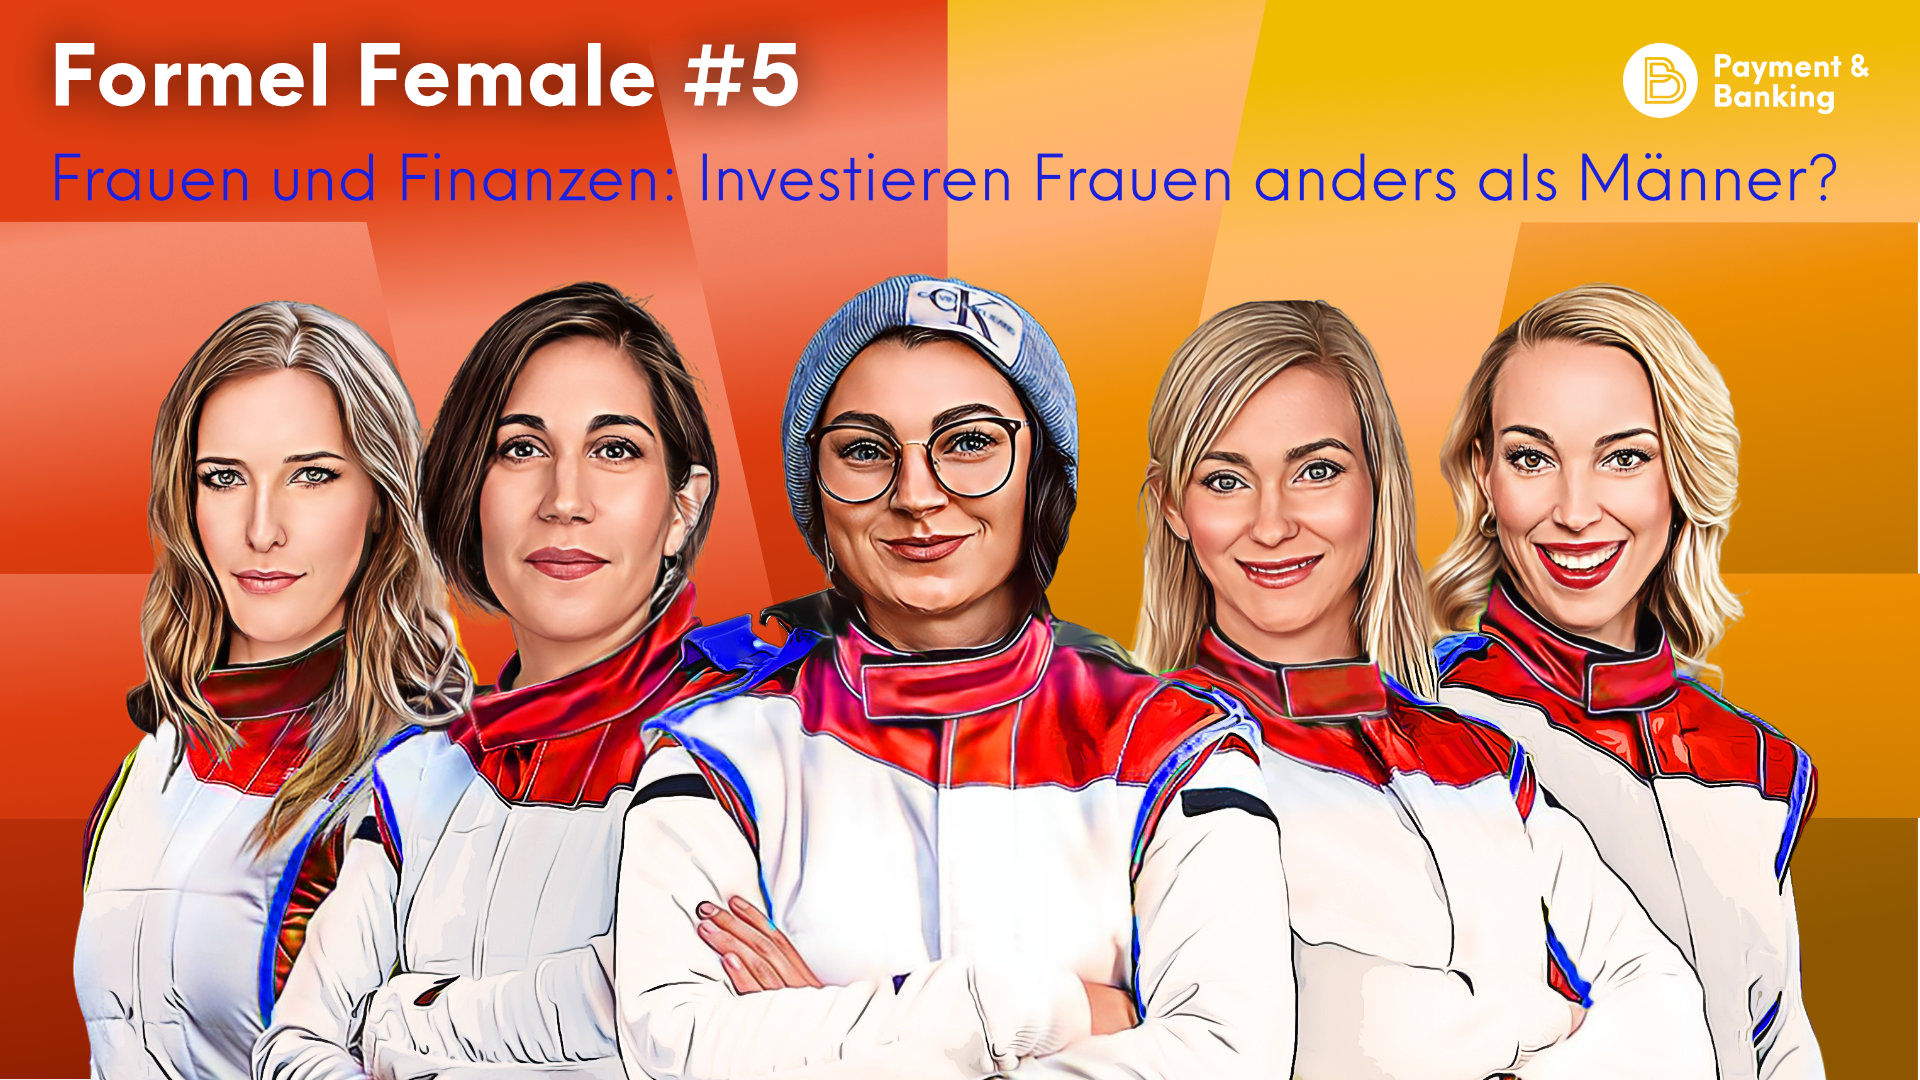 Formel Female #5 - Frauen und Finanzen: Investieren Frauen anders als Männer?